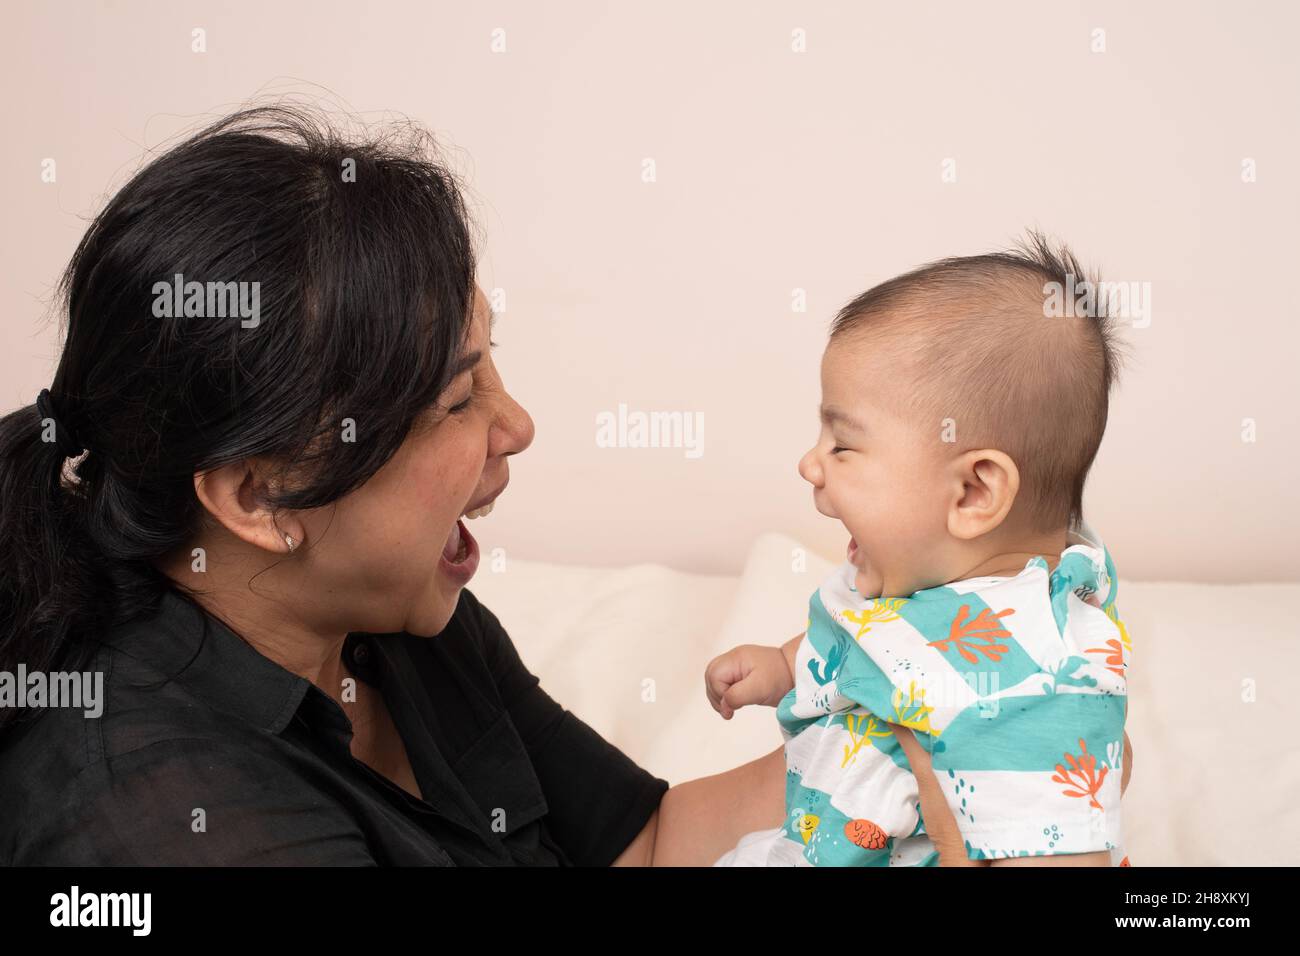 3 Monate alter Junge Interaktion mit der Mutter, passende Ausdrücke, lachend, Mund offen Stockfoto